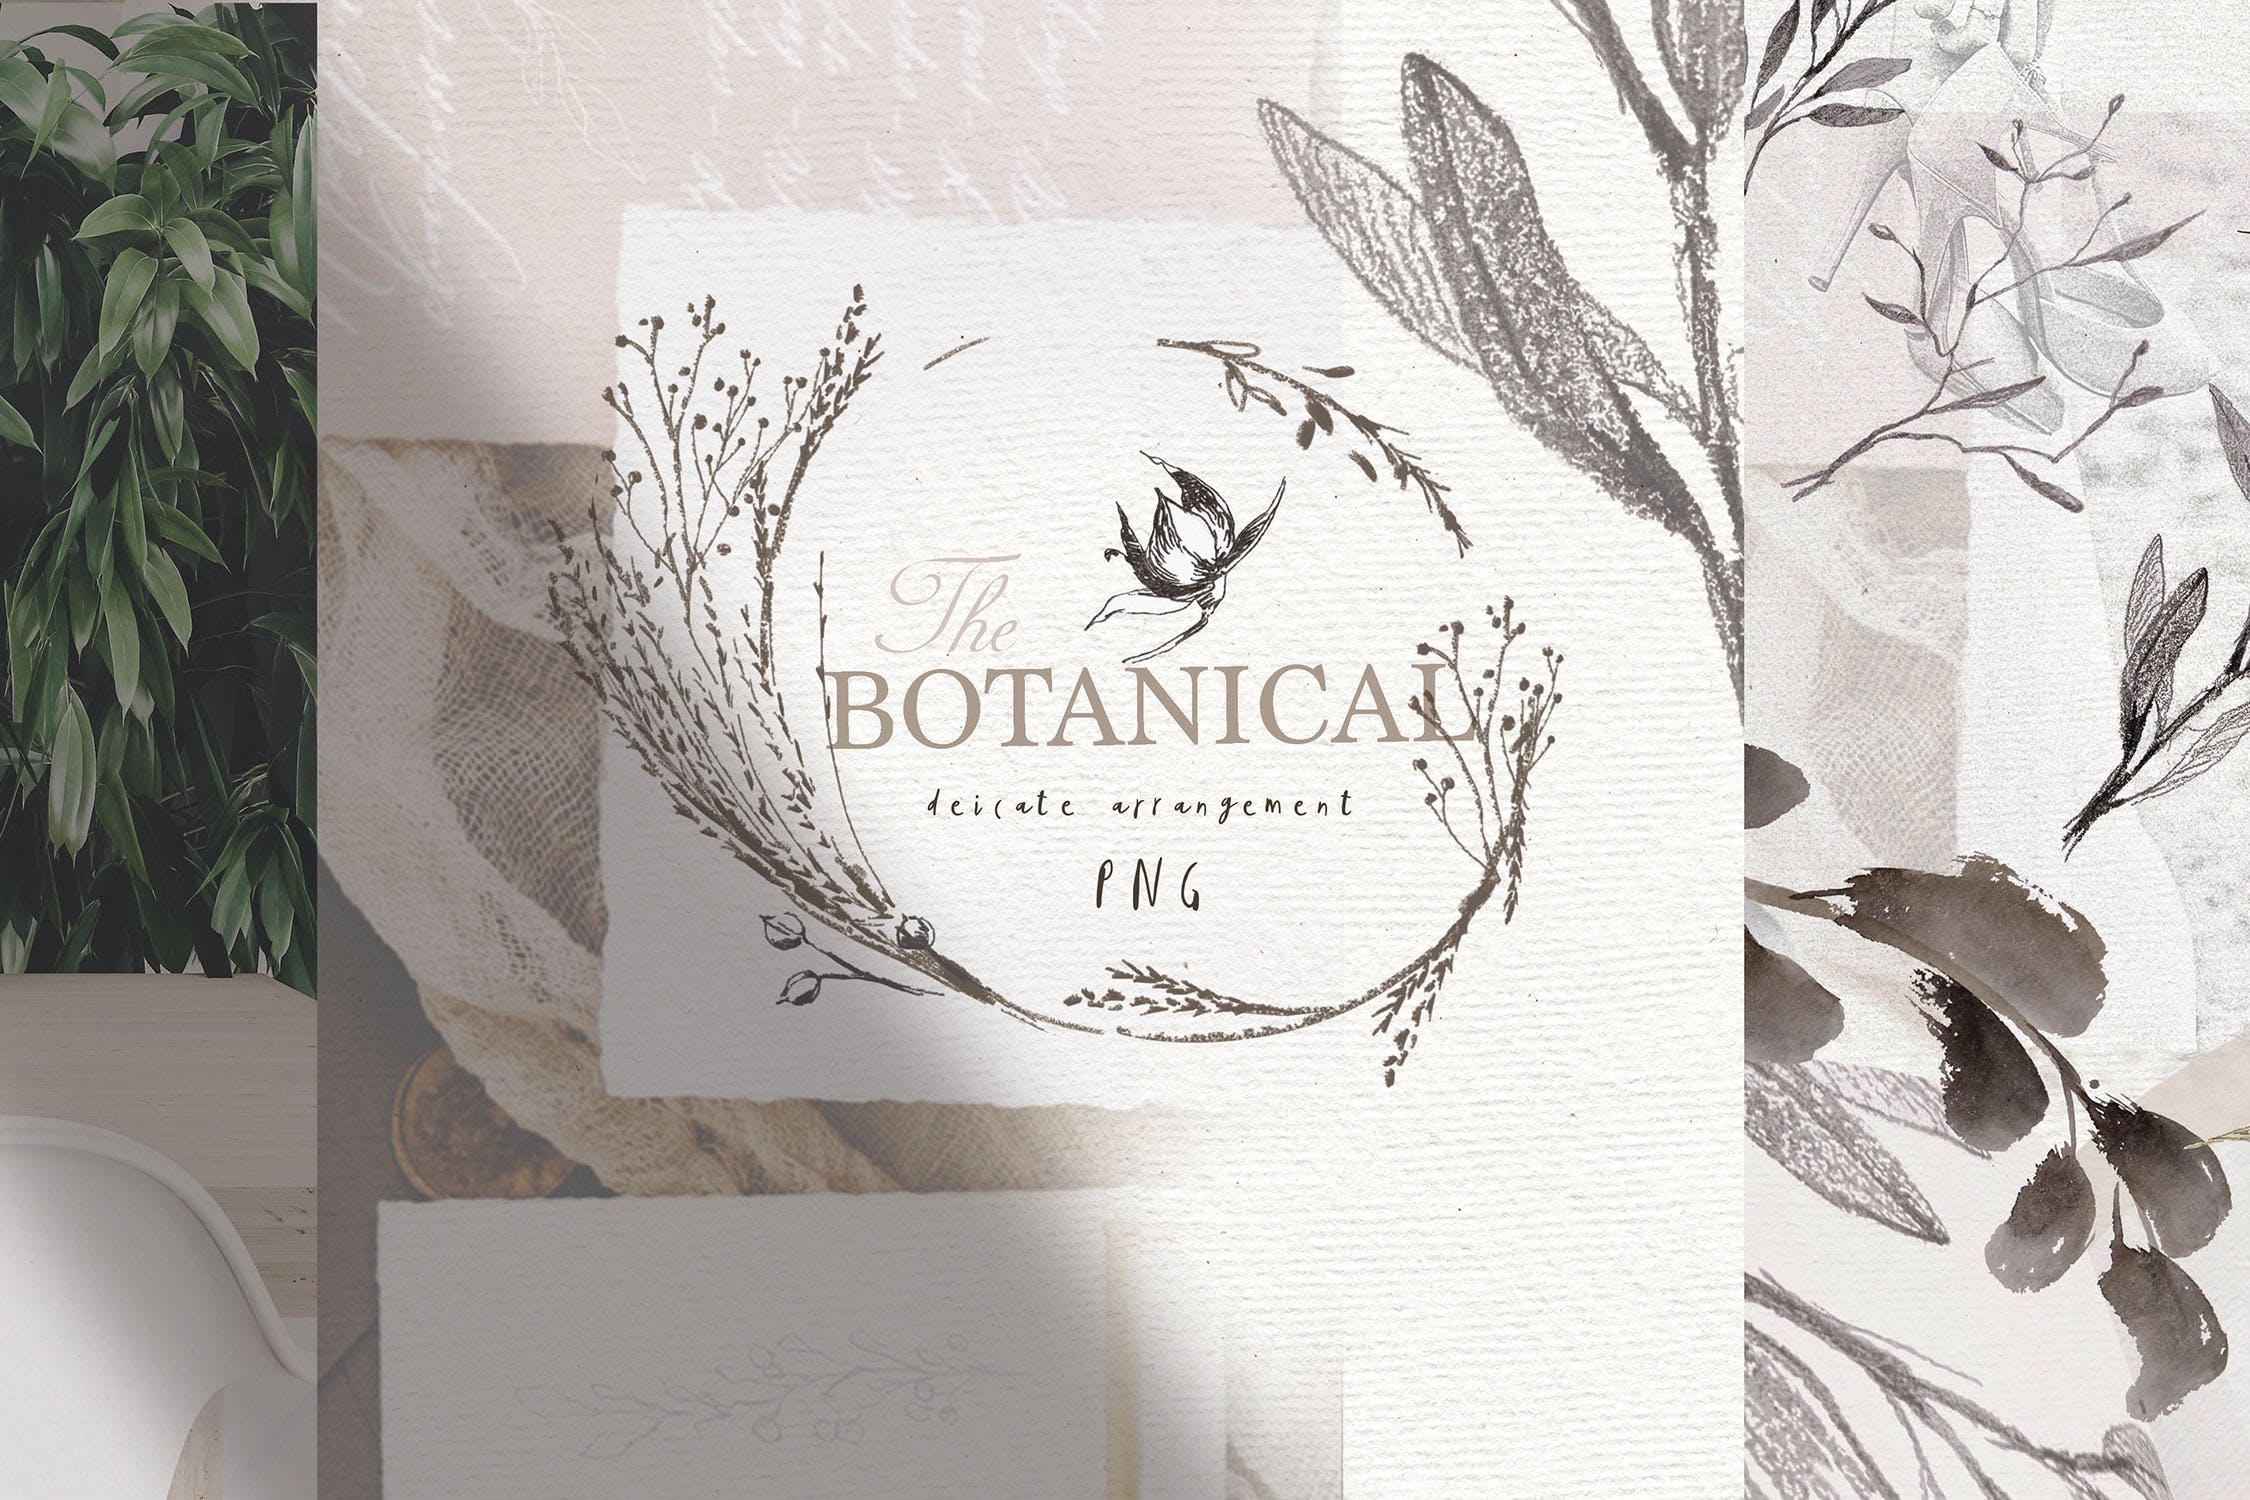 优雅风格植物Logo标志元素设计素材v3 BOTANICAL LOGO ELEMENTS vol.3插图9